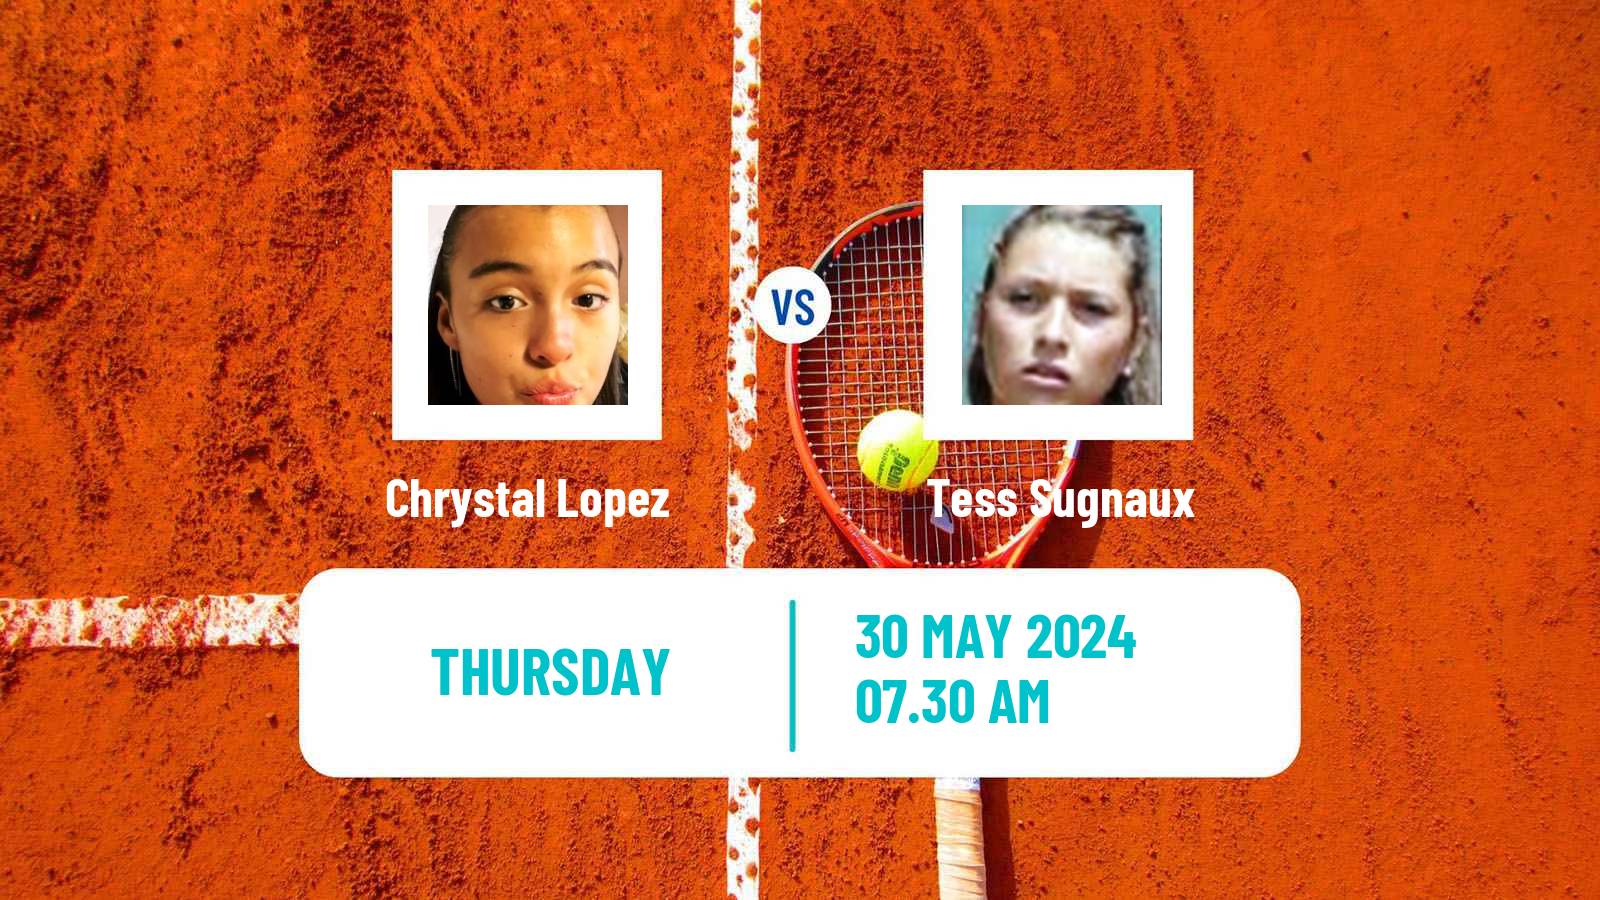 Tennis ITF W35 La Marsa Women Chrystal Lopez - Tess Sugnaux